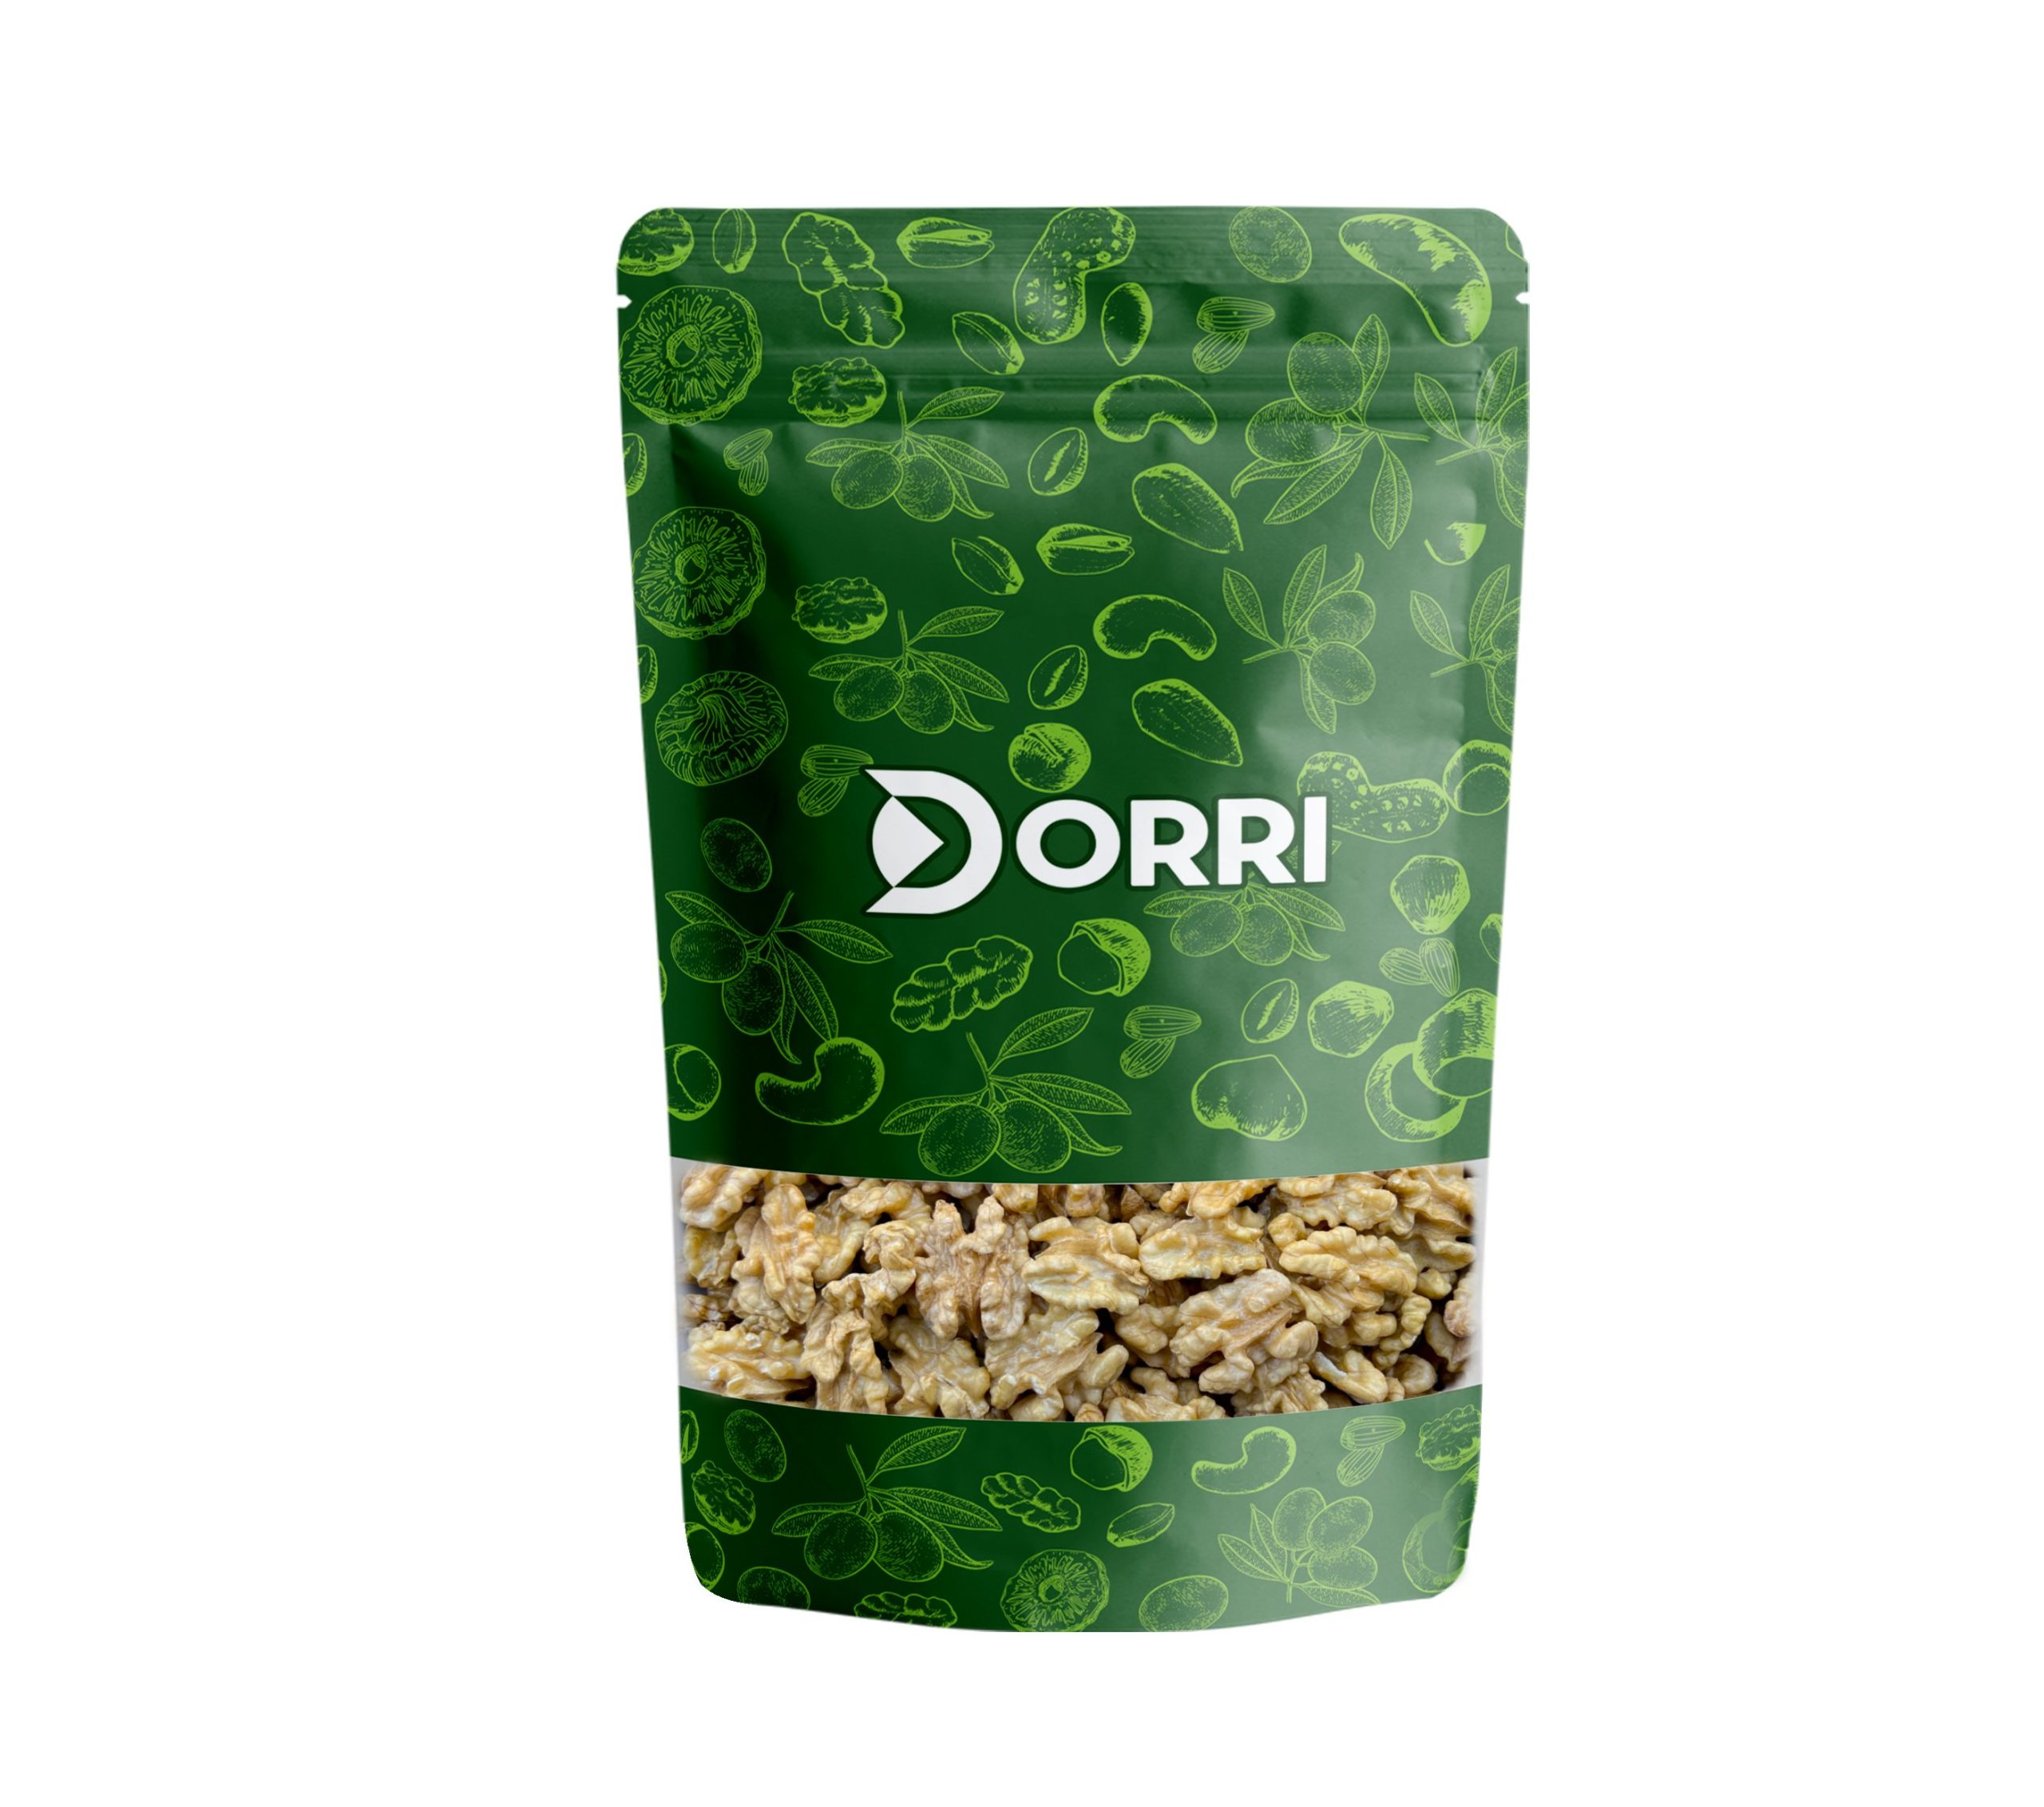 Dorri - Walnuts